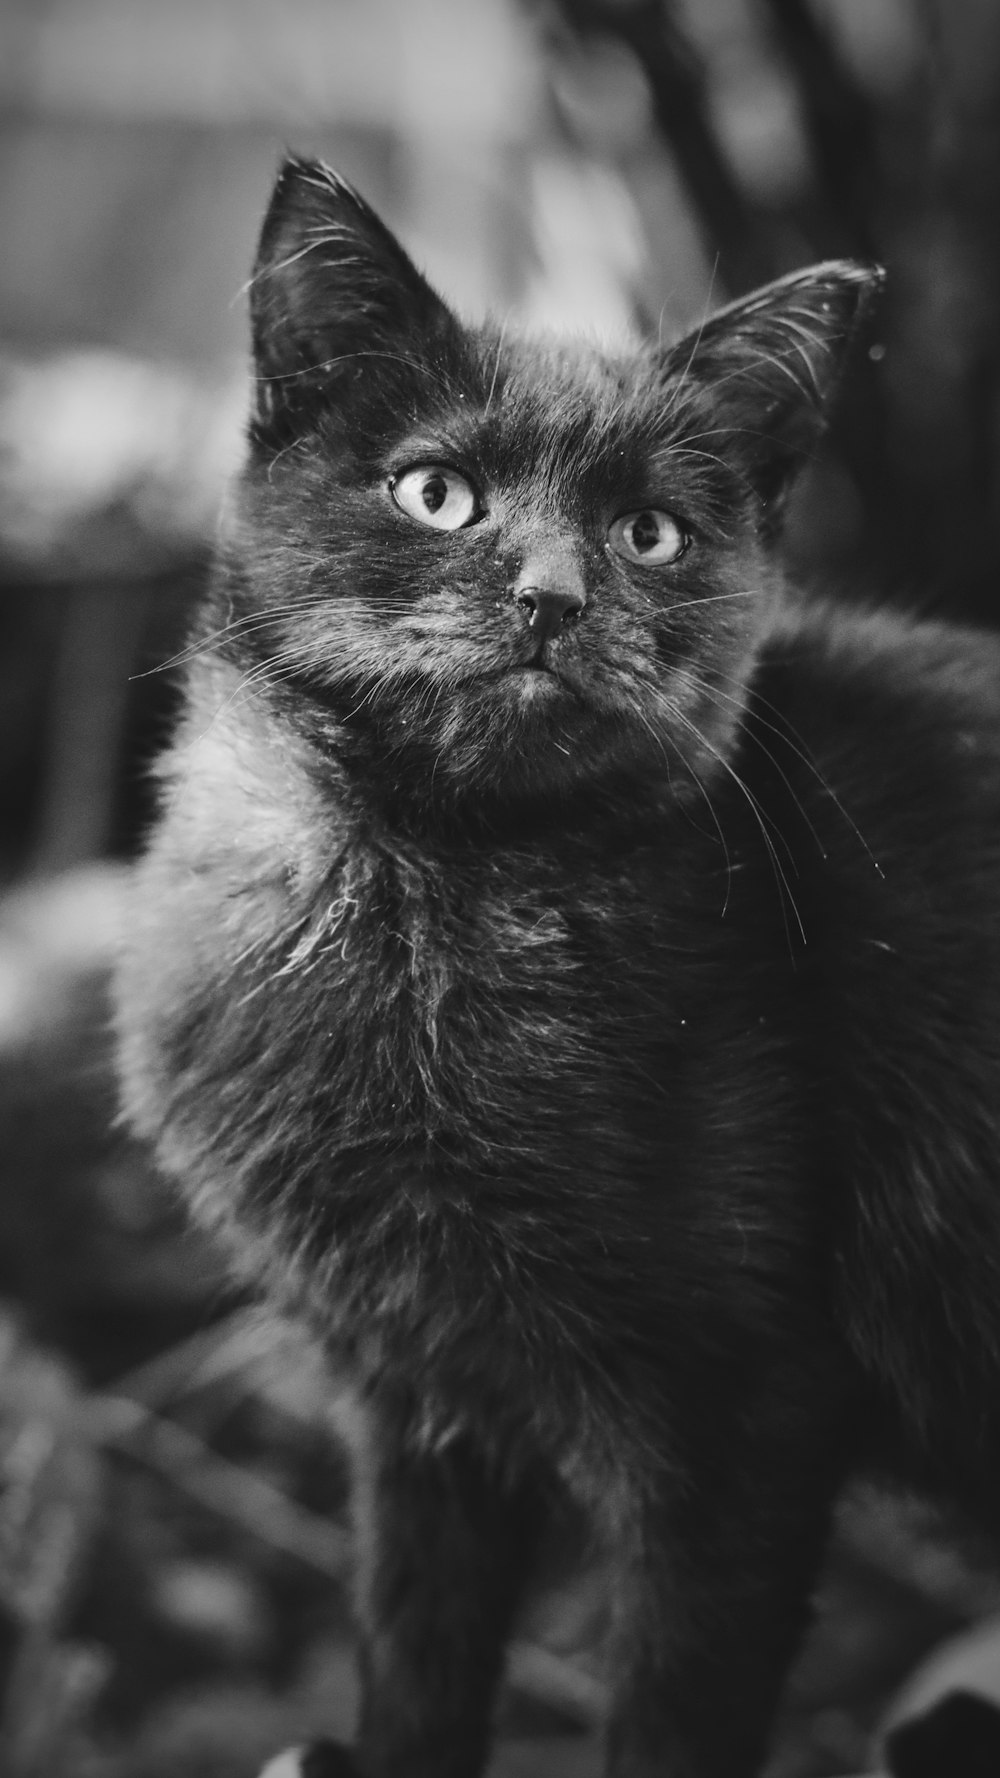 グレースケール写真の黒猫